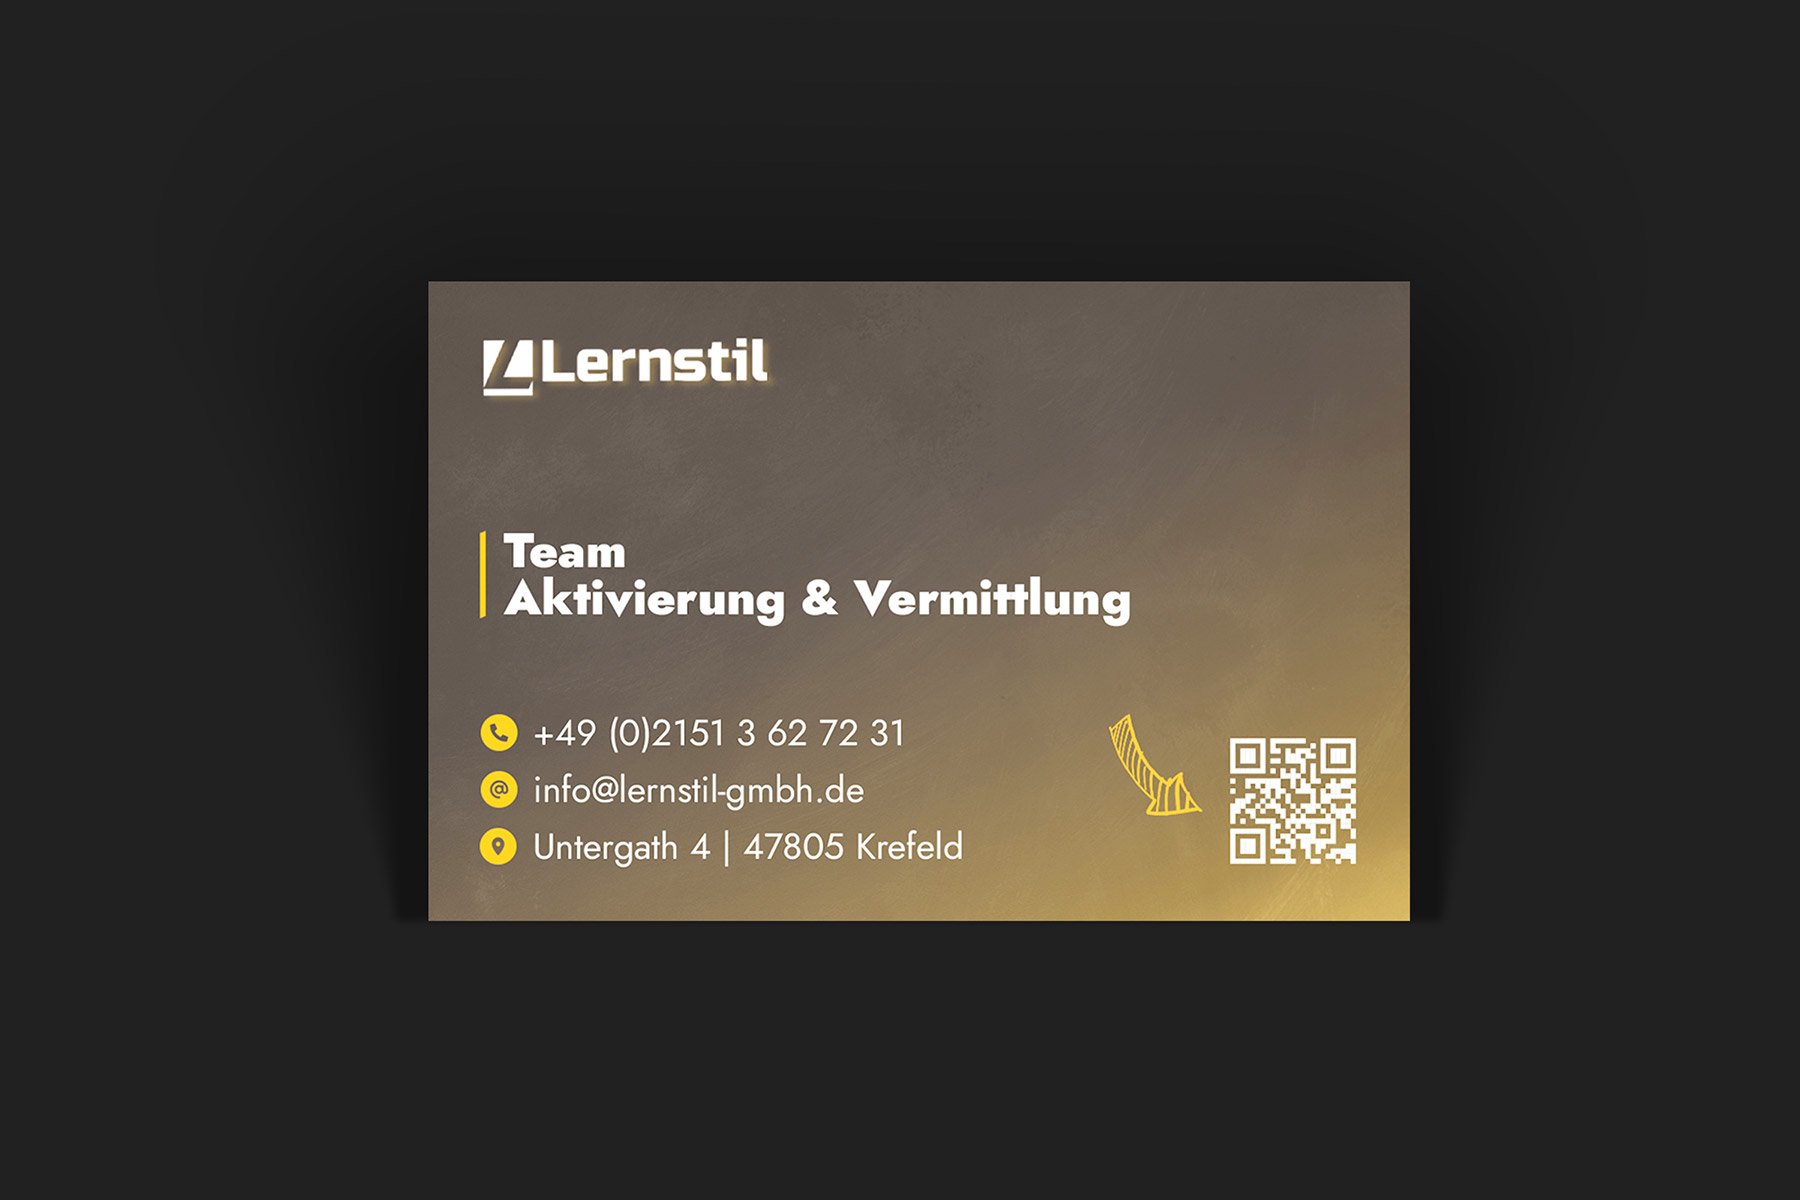 Rückseite einer Visitenkarte mit Kontaktdaten der Lernstil GmbH